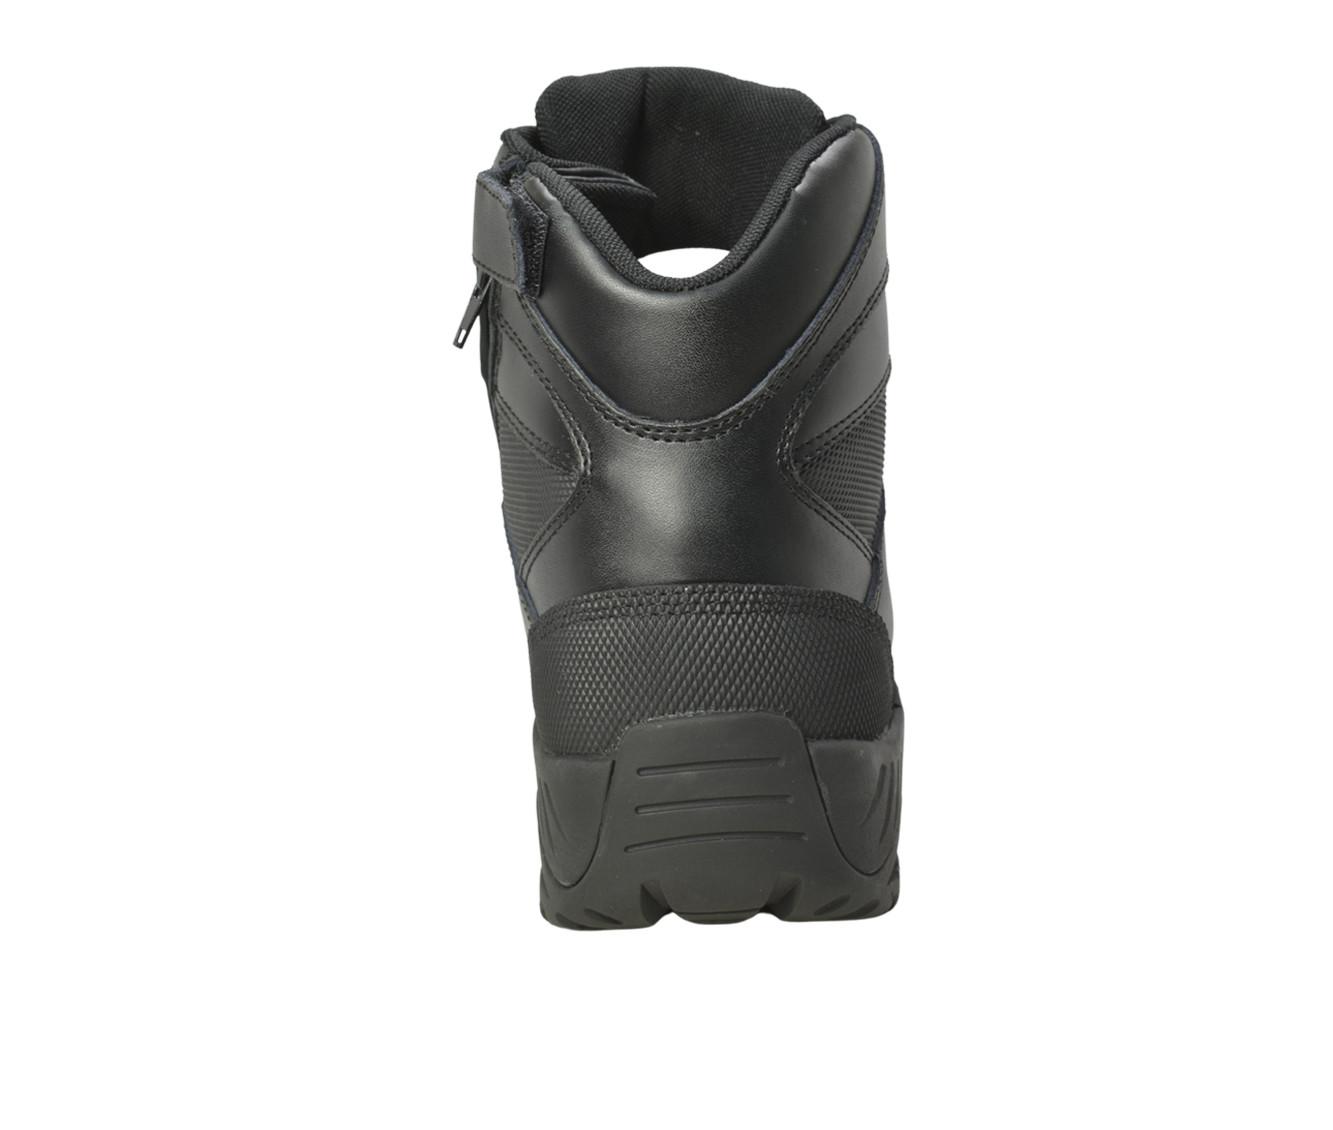 Men's AdTec 6" Side Zip Tactical Work Boots